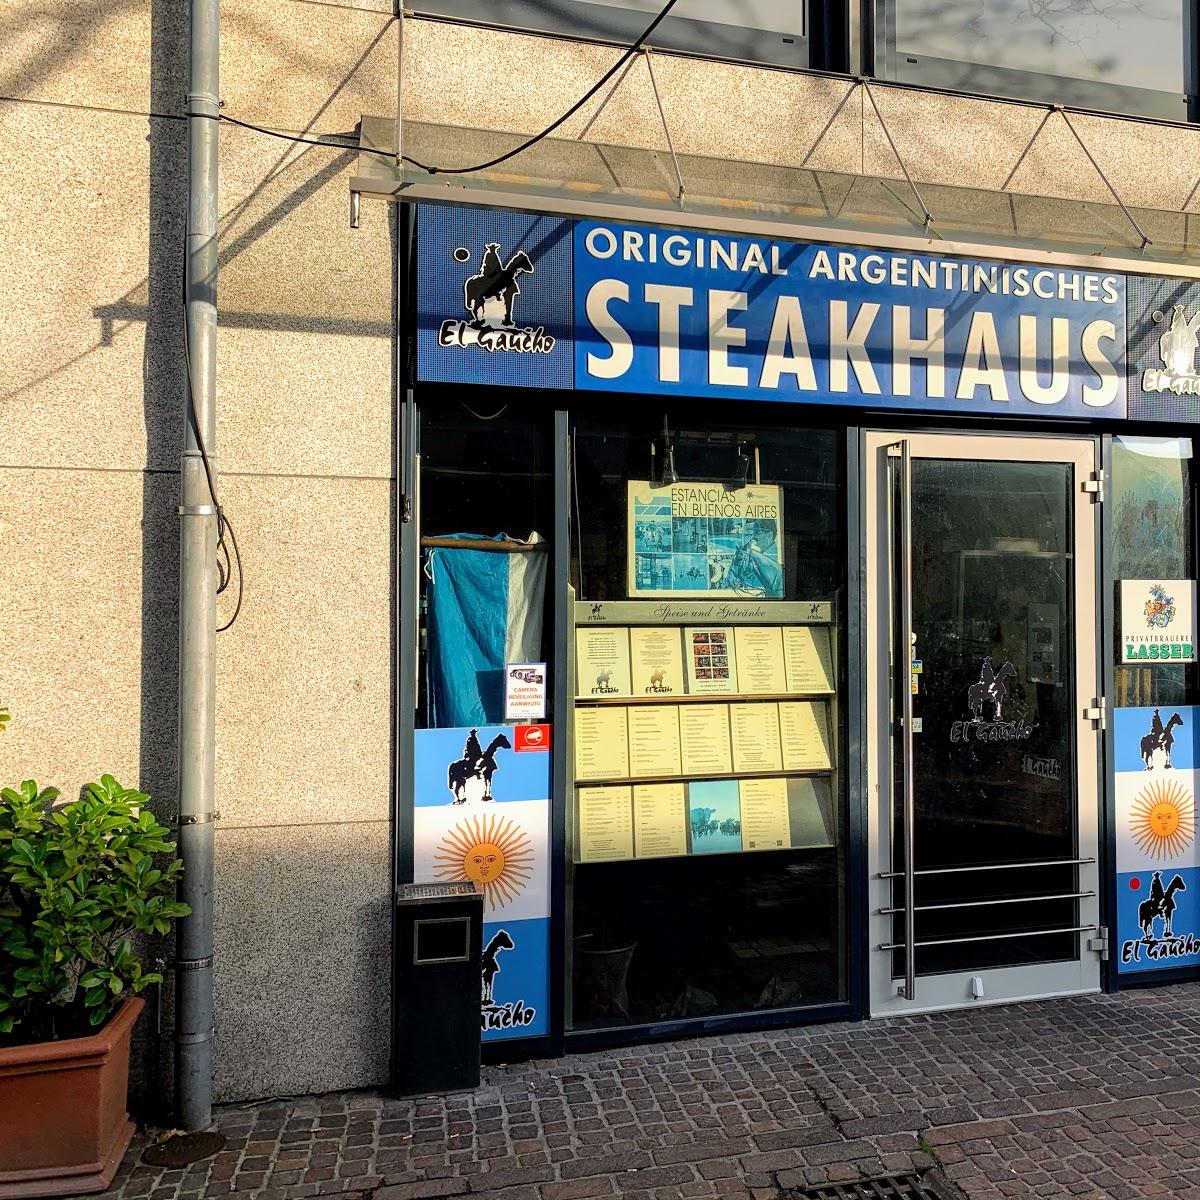 Restaurant "El Gaucho Steak haus" in Lörrach